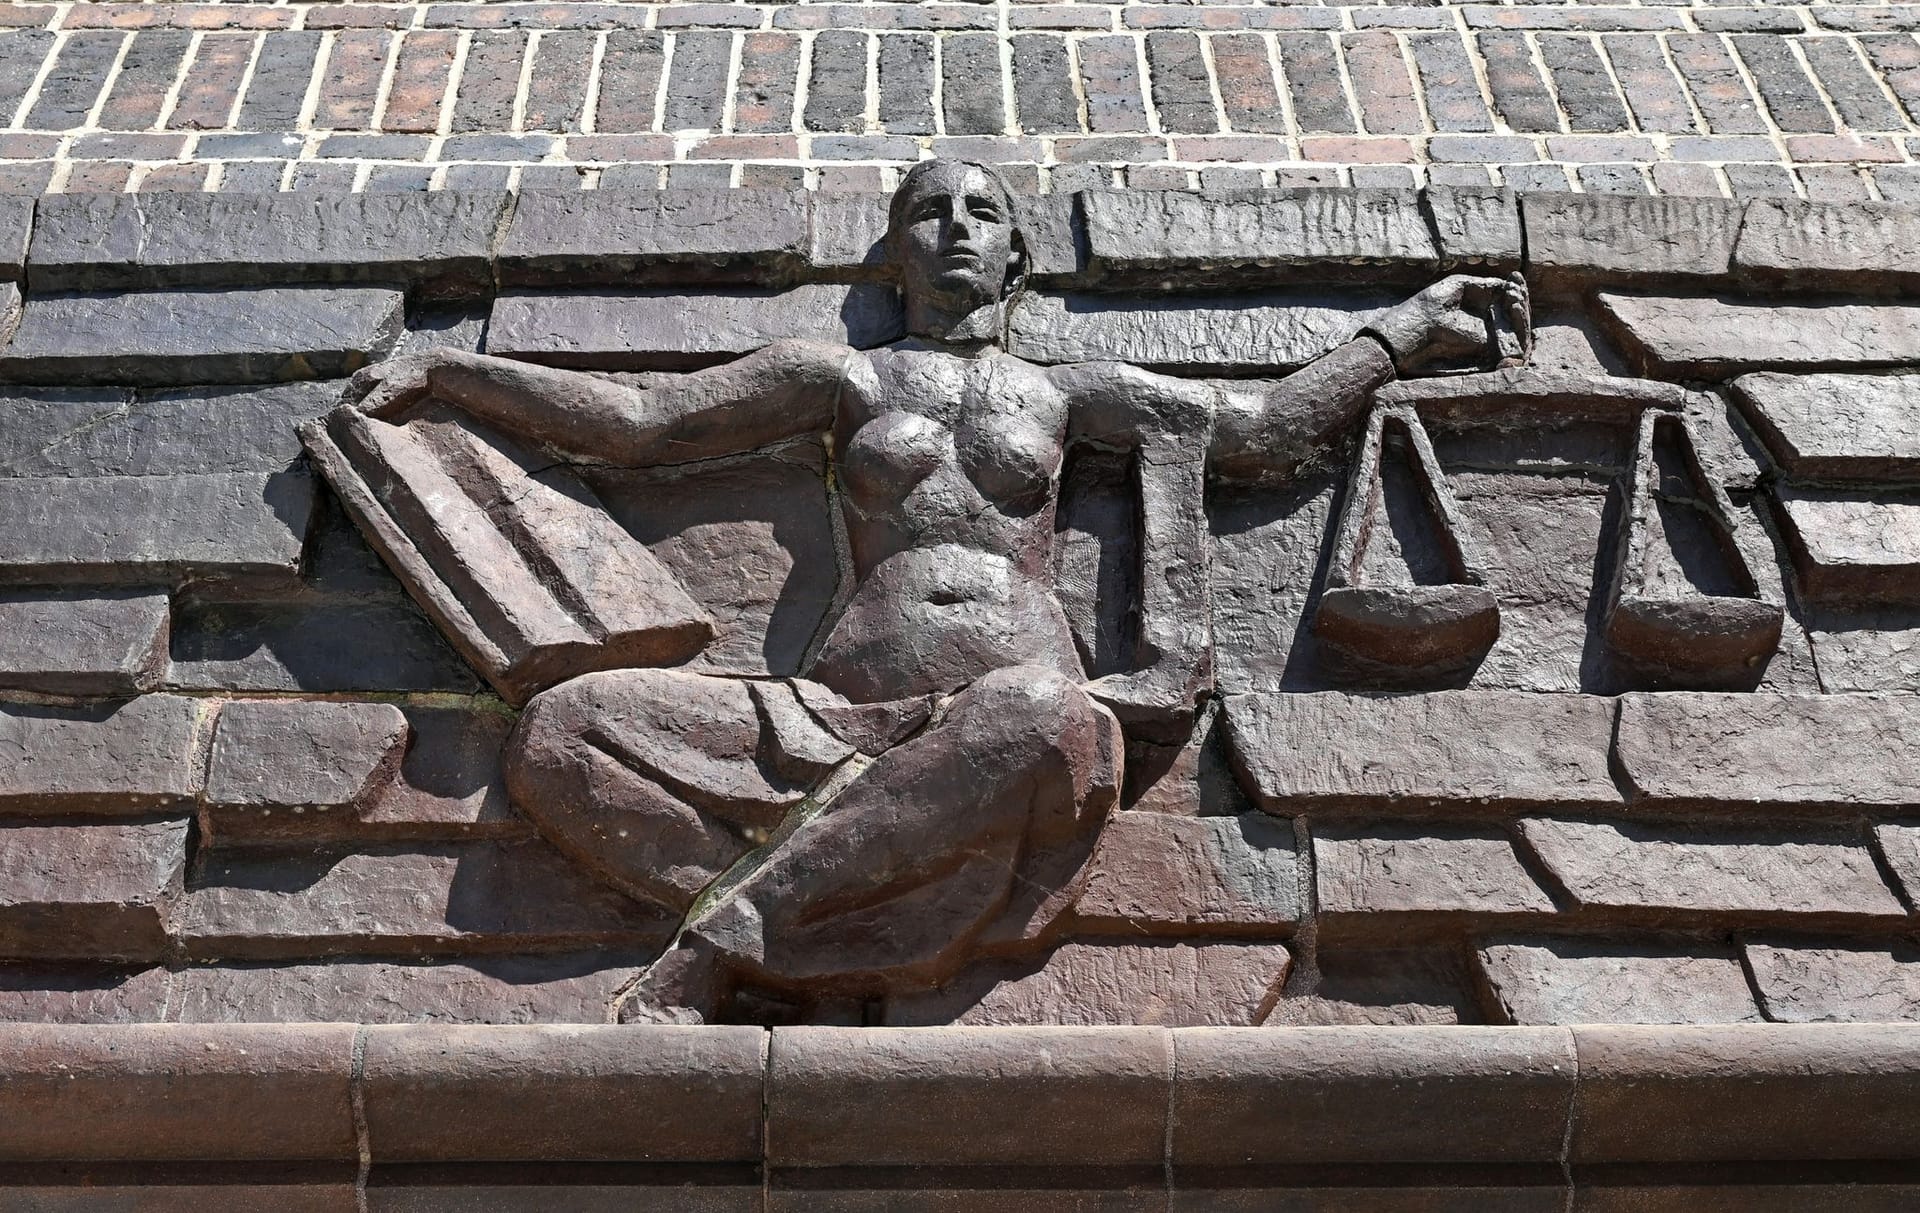 Blick auf die Justitia über dem Eingang eines Landgerichts (Synonym): Das Geld aus dem Drogenhandel wird eingezogen.